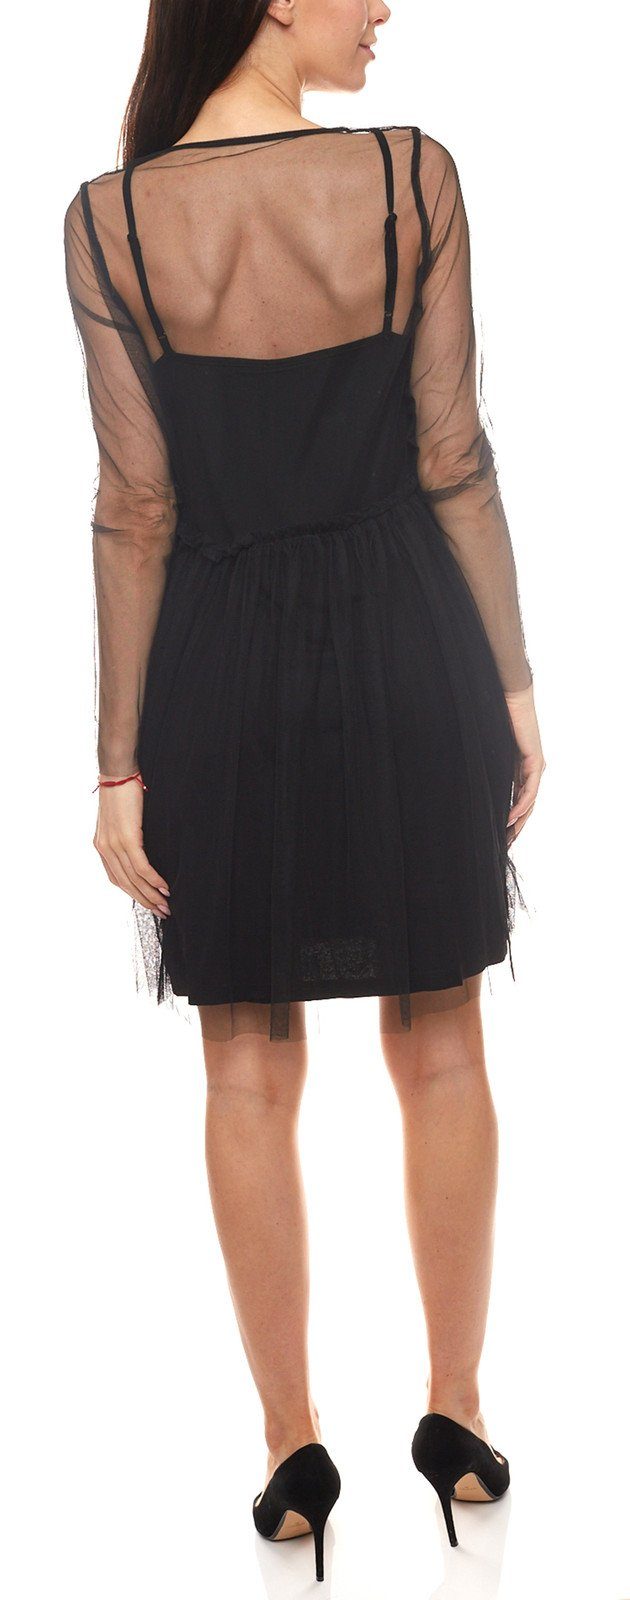 minimum Minikleid minimum Mini-Kleid teilweise Damen Freizeit-Kleid Lagen-Look im Kleid transparentes Schwarz